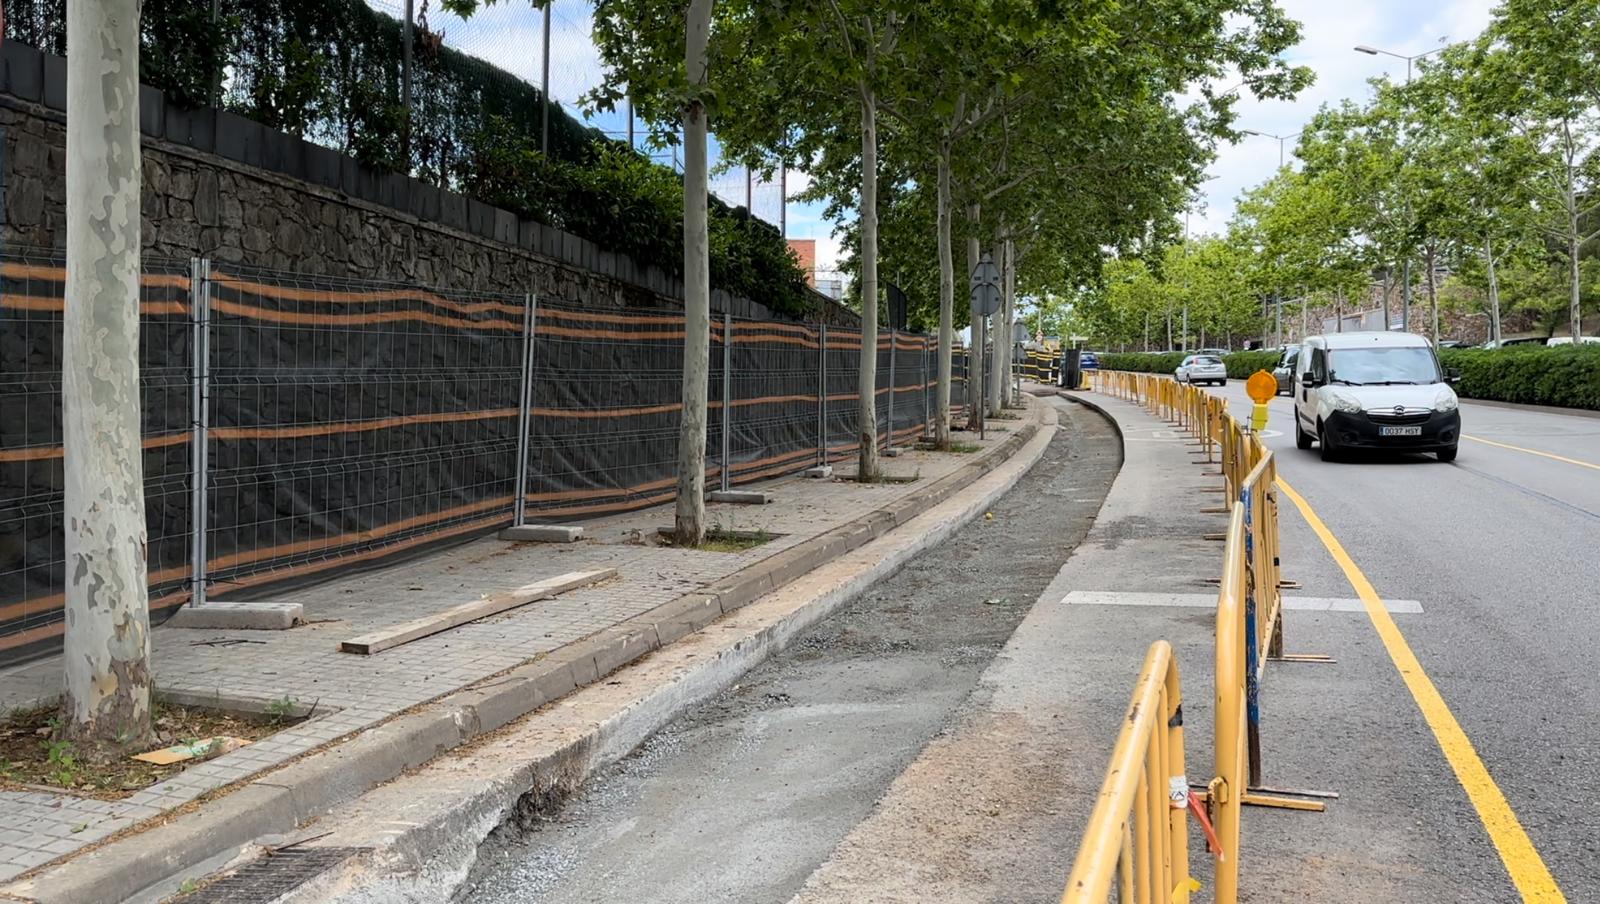 Les obres per ampliar la xarxa d’aigües freàtiques comportaran afectacions al trànsit a l’avinguda de Rafael Casanova durant el cap de setmana